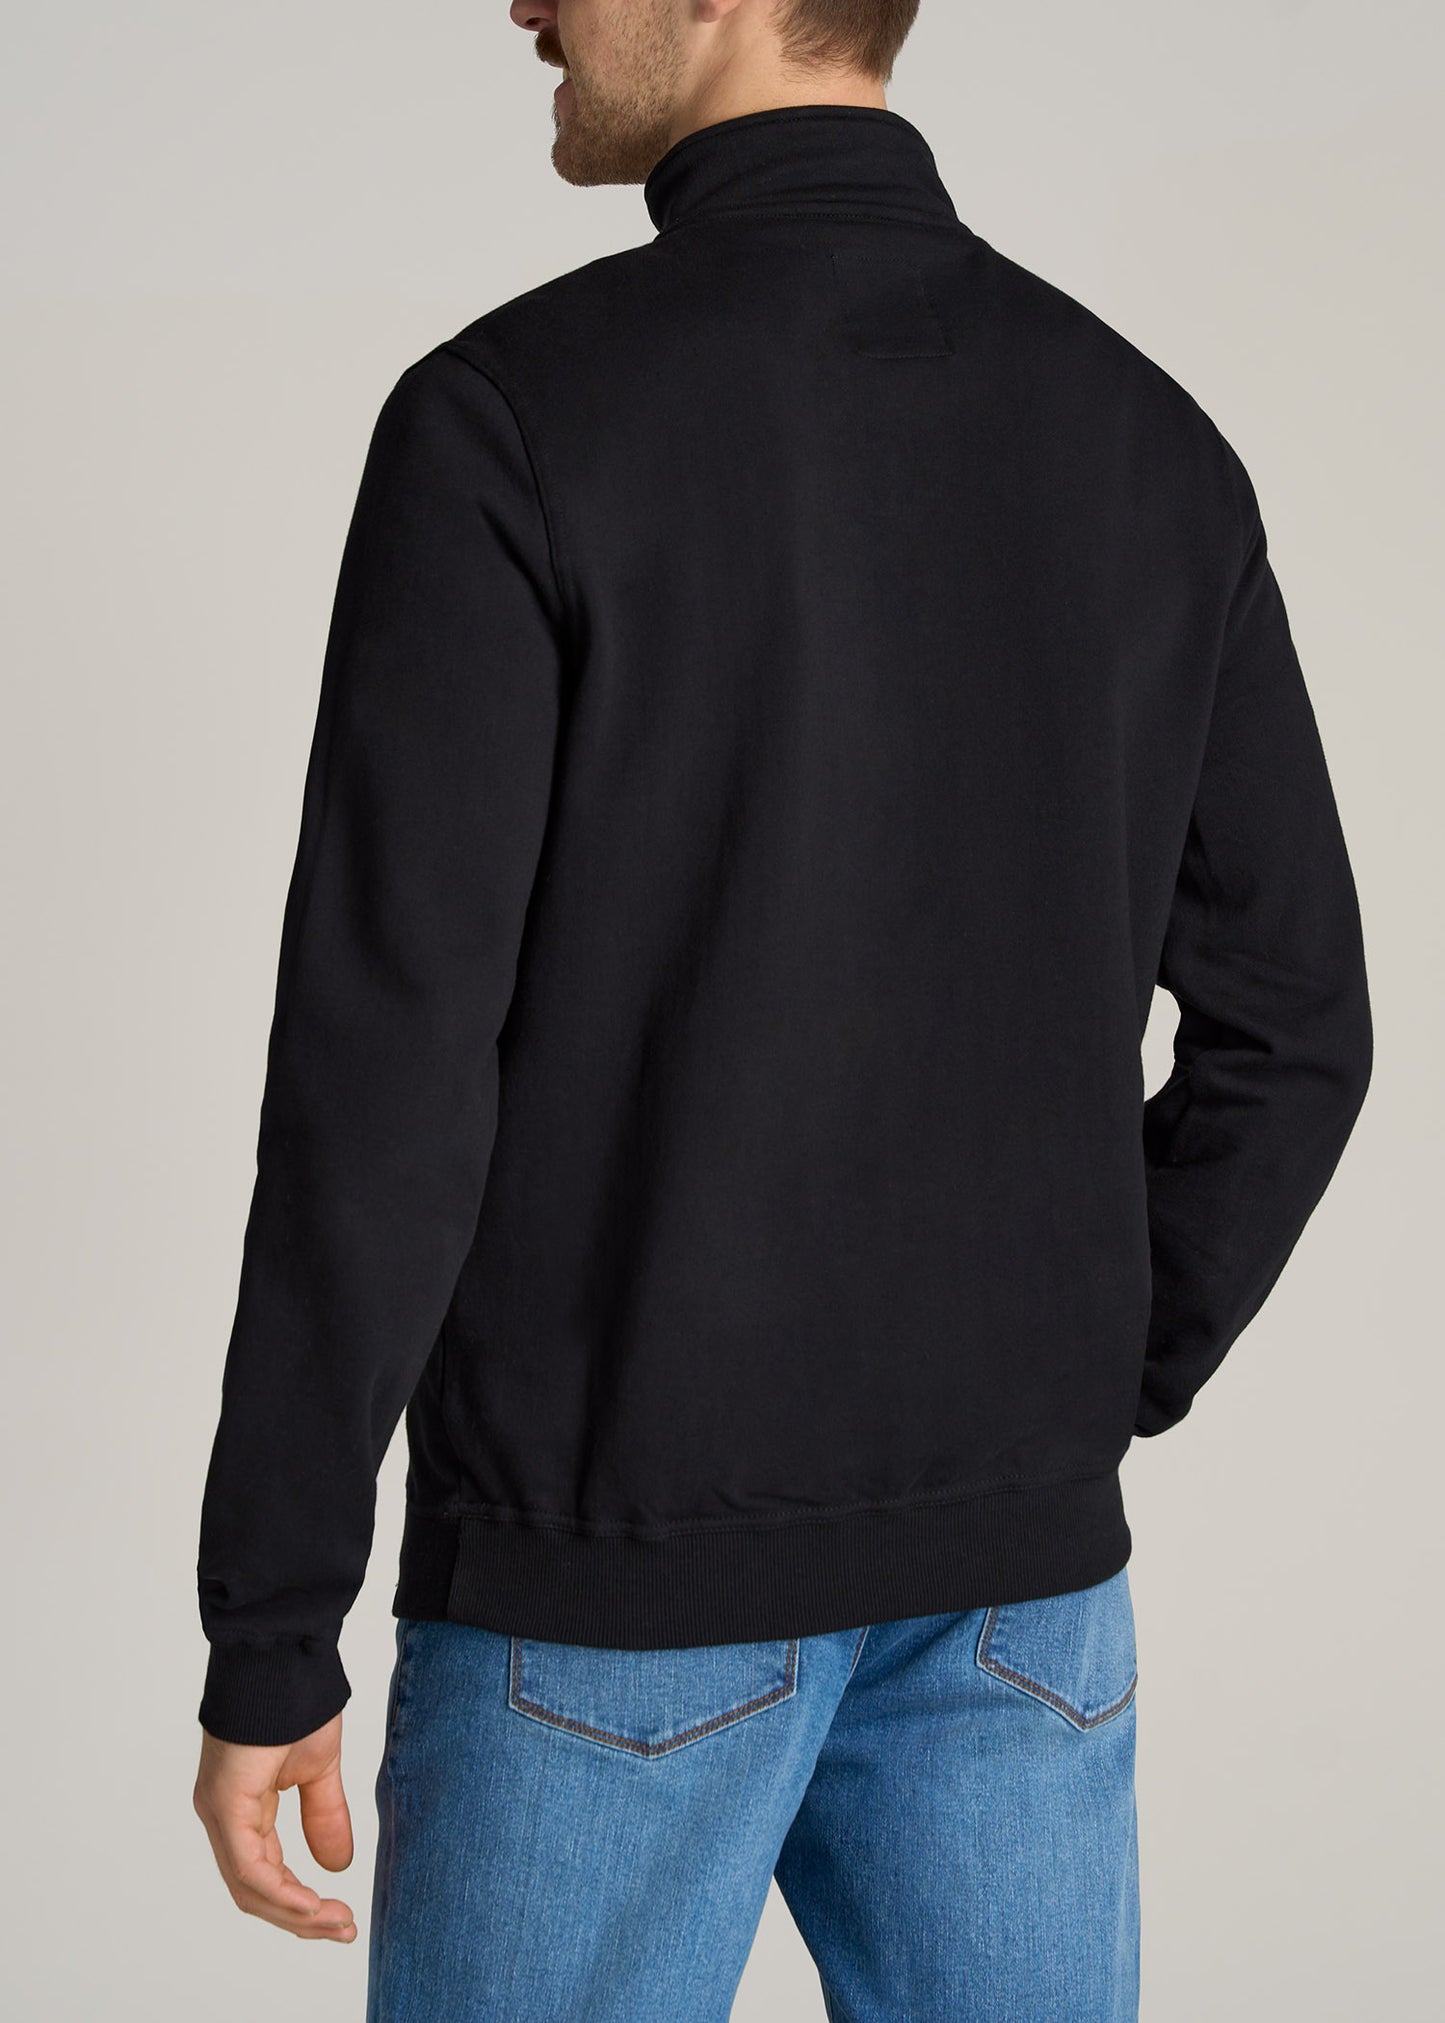    American-Tall-Men-Wearever-Fleece-Quarter-Zip-Sweatshirt-Black-back